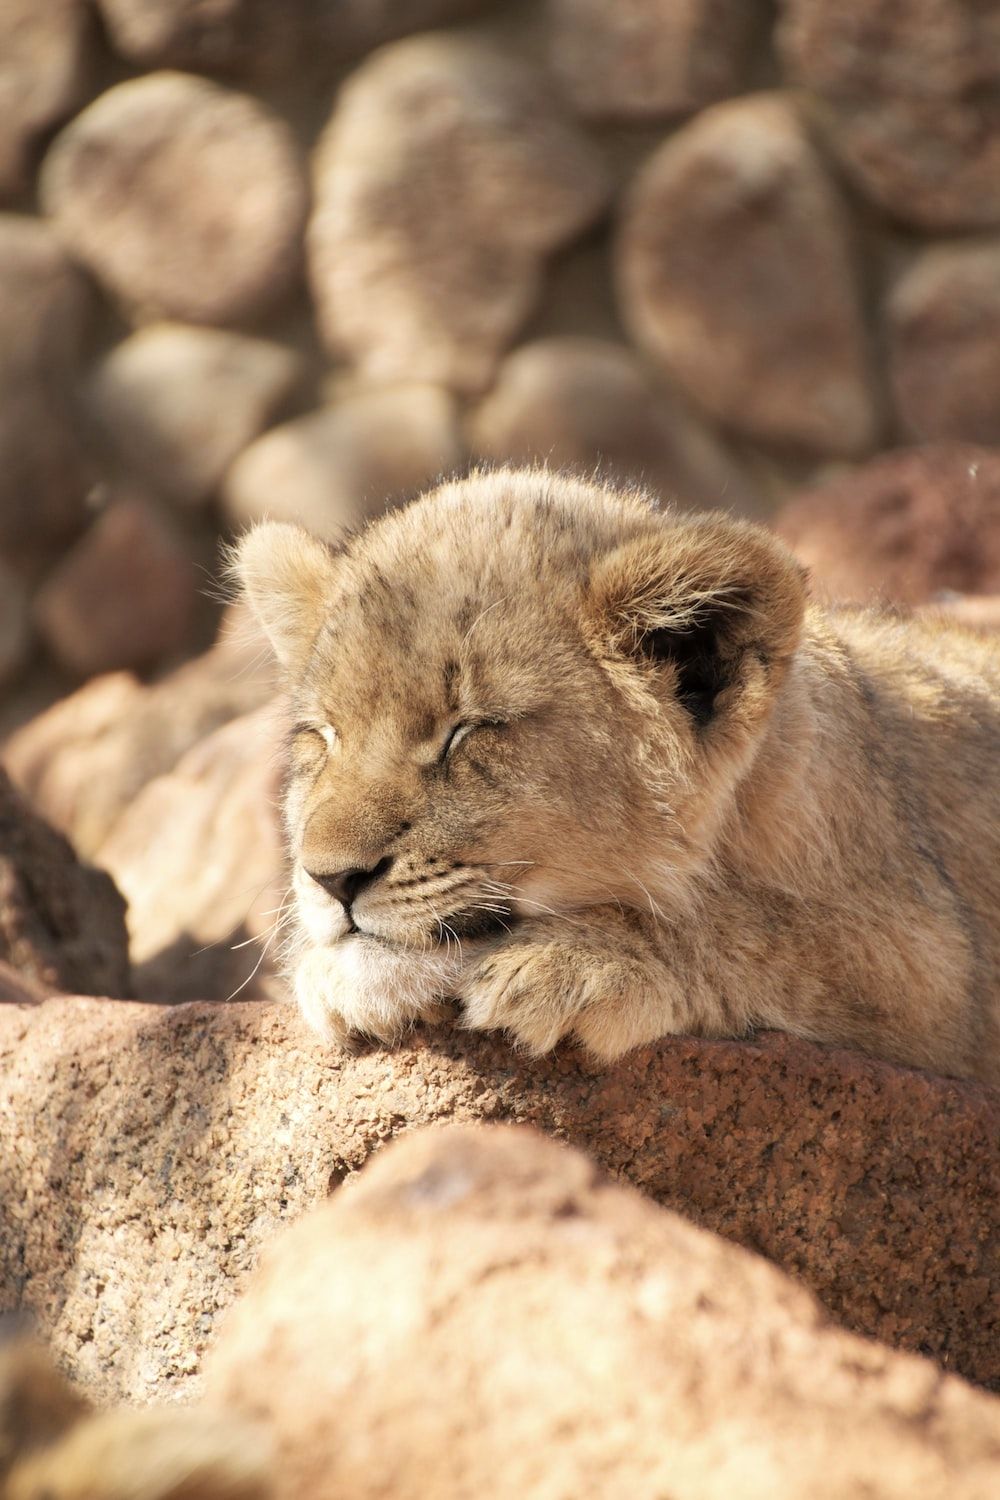  Löwen Hintergrundbild 1000x1500. Lion Cub Picture. Download Free Image